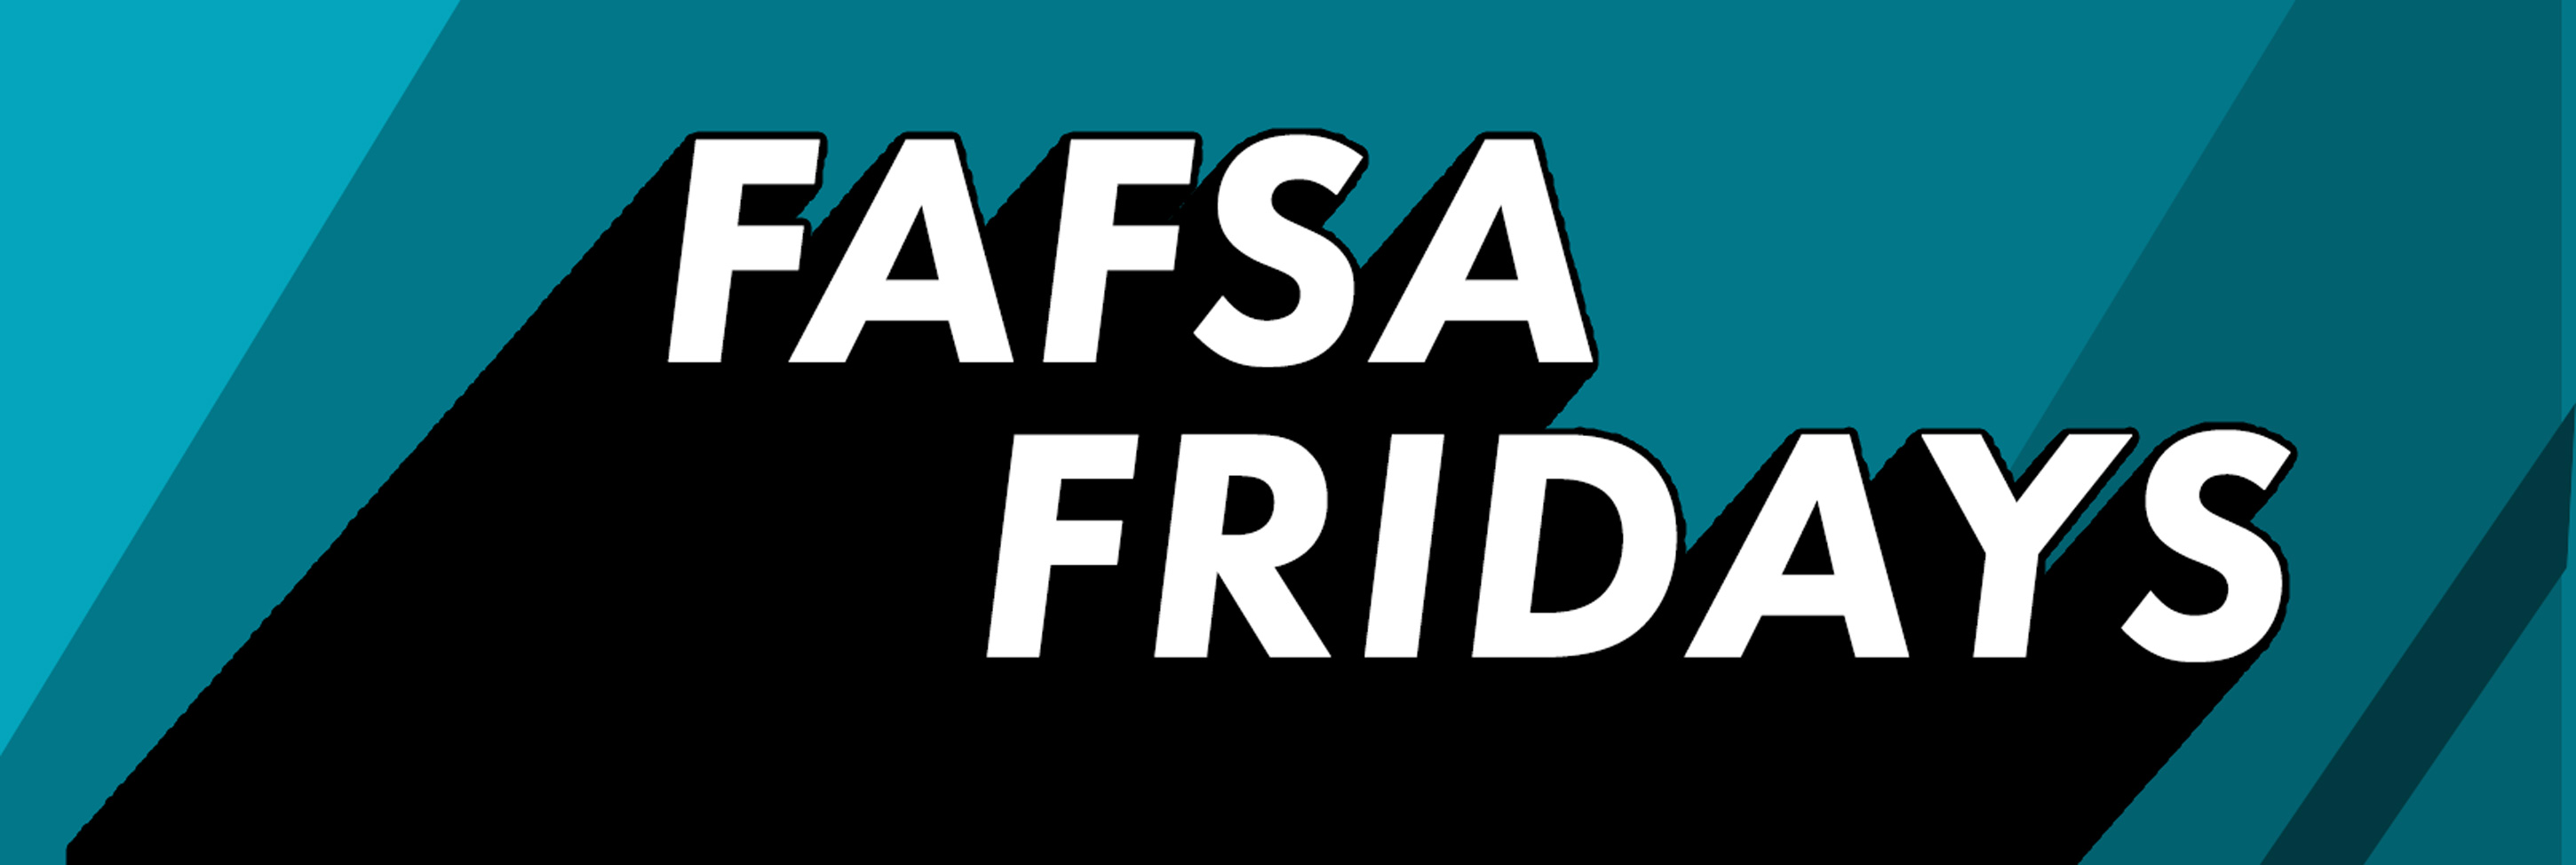 FAFSA Fridays Banner